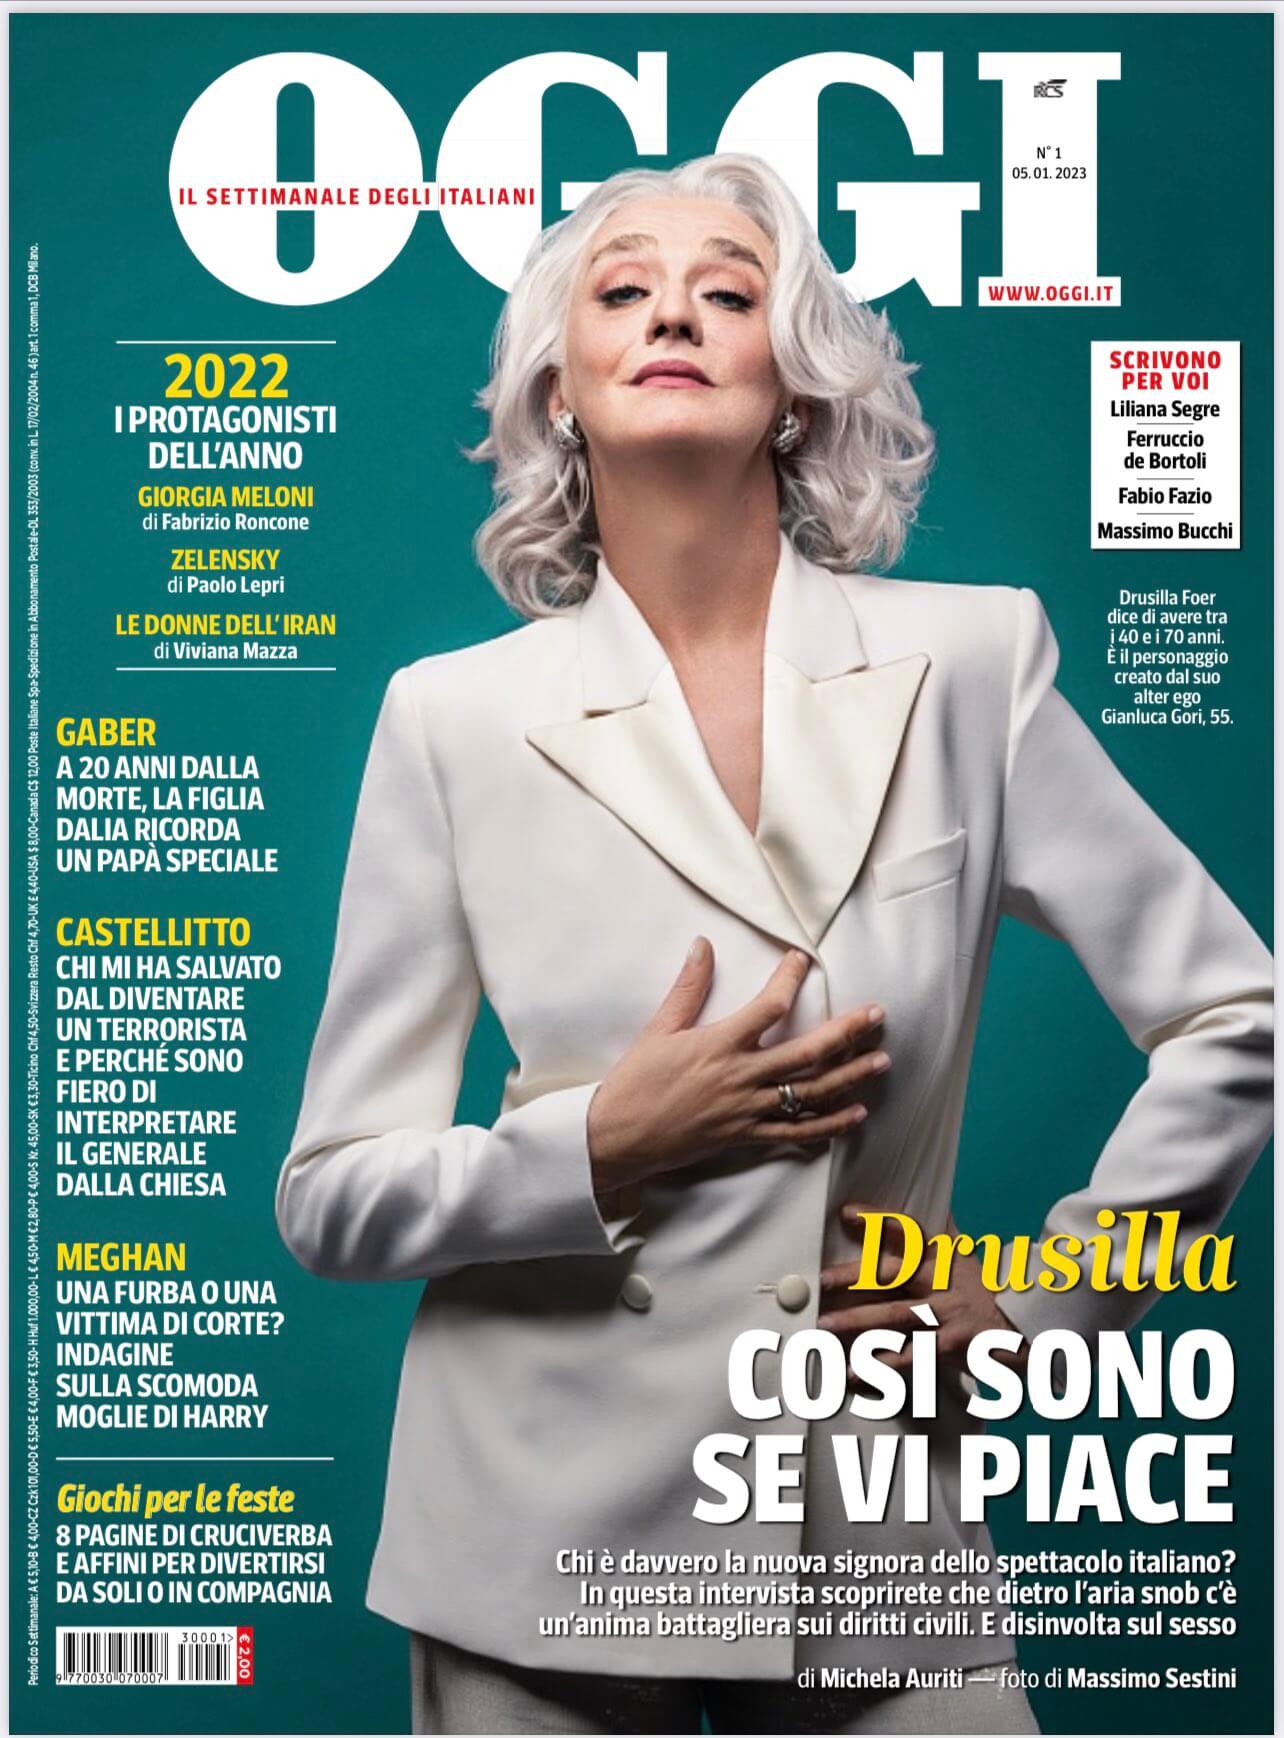 Drusilla Foer: "In piazza se ci sarà una regressione sui diritti" - Drusilla Foer - Gay.it